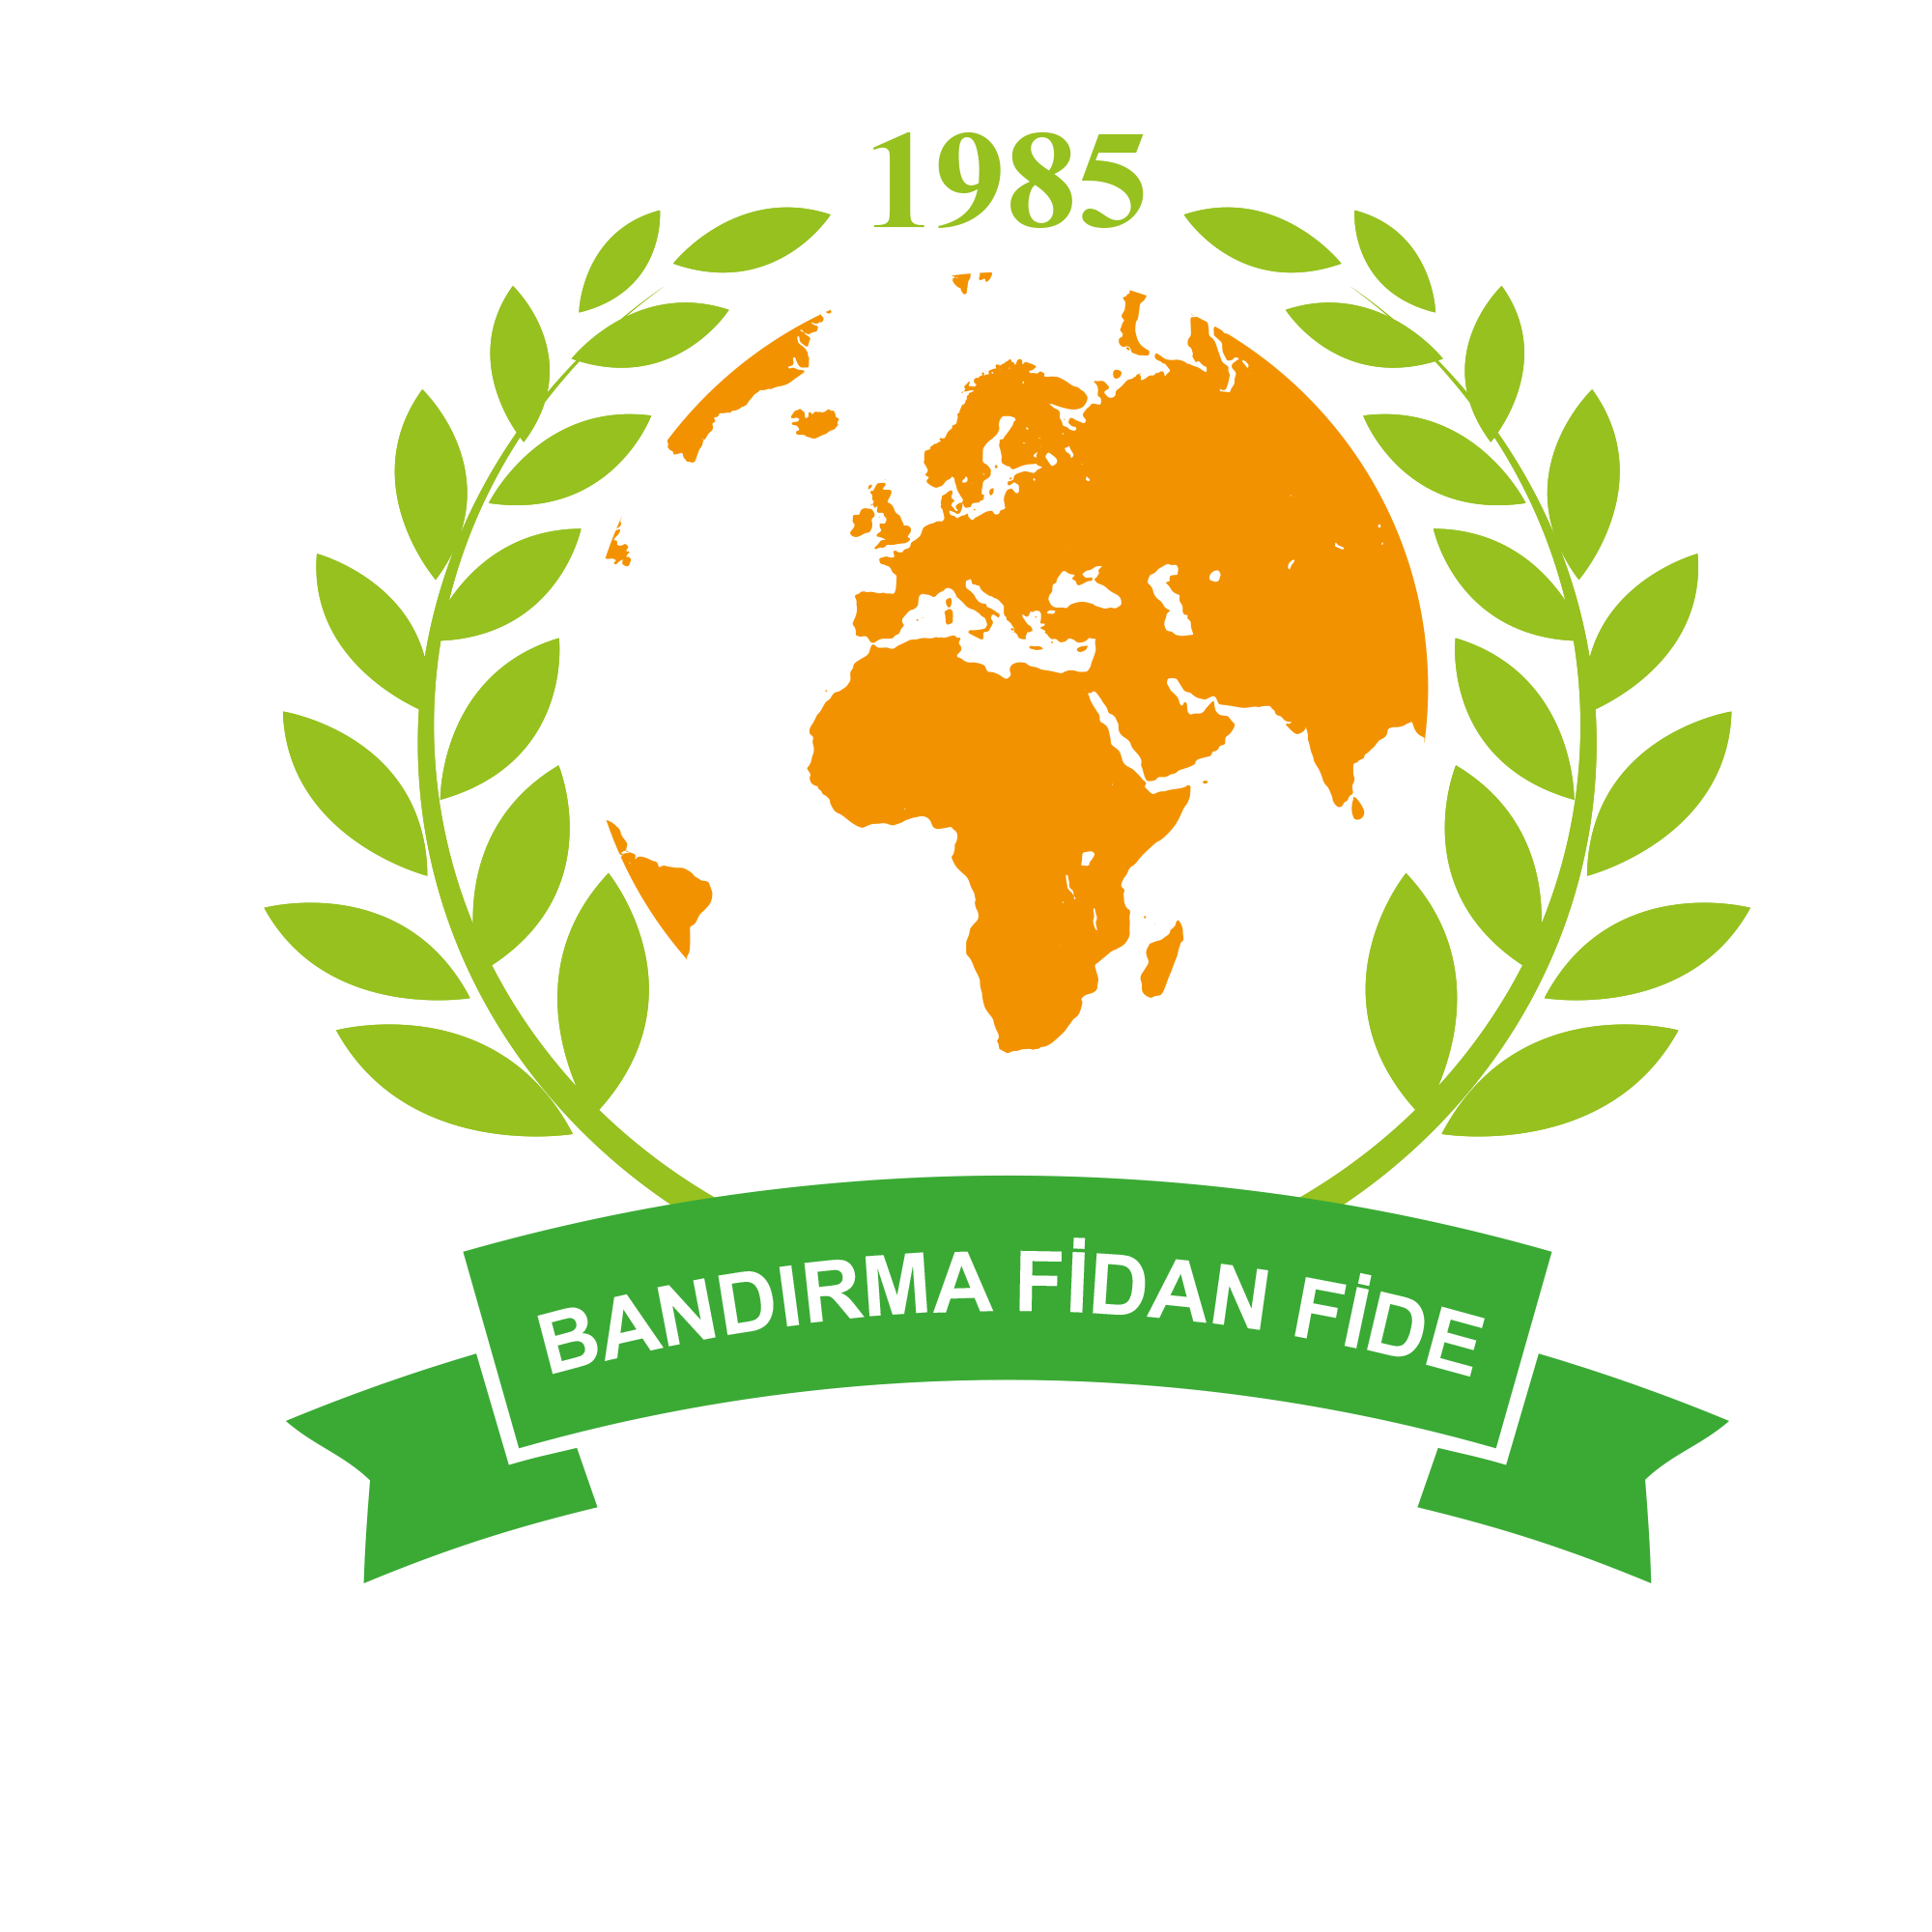 BandirmaFidan